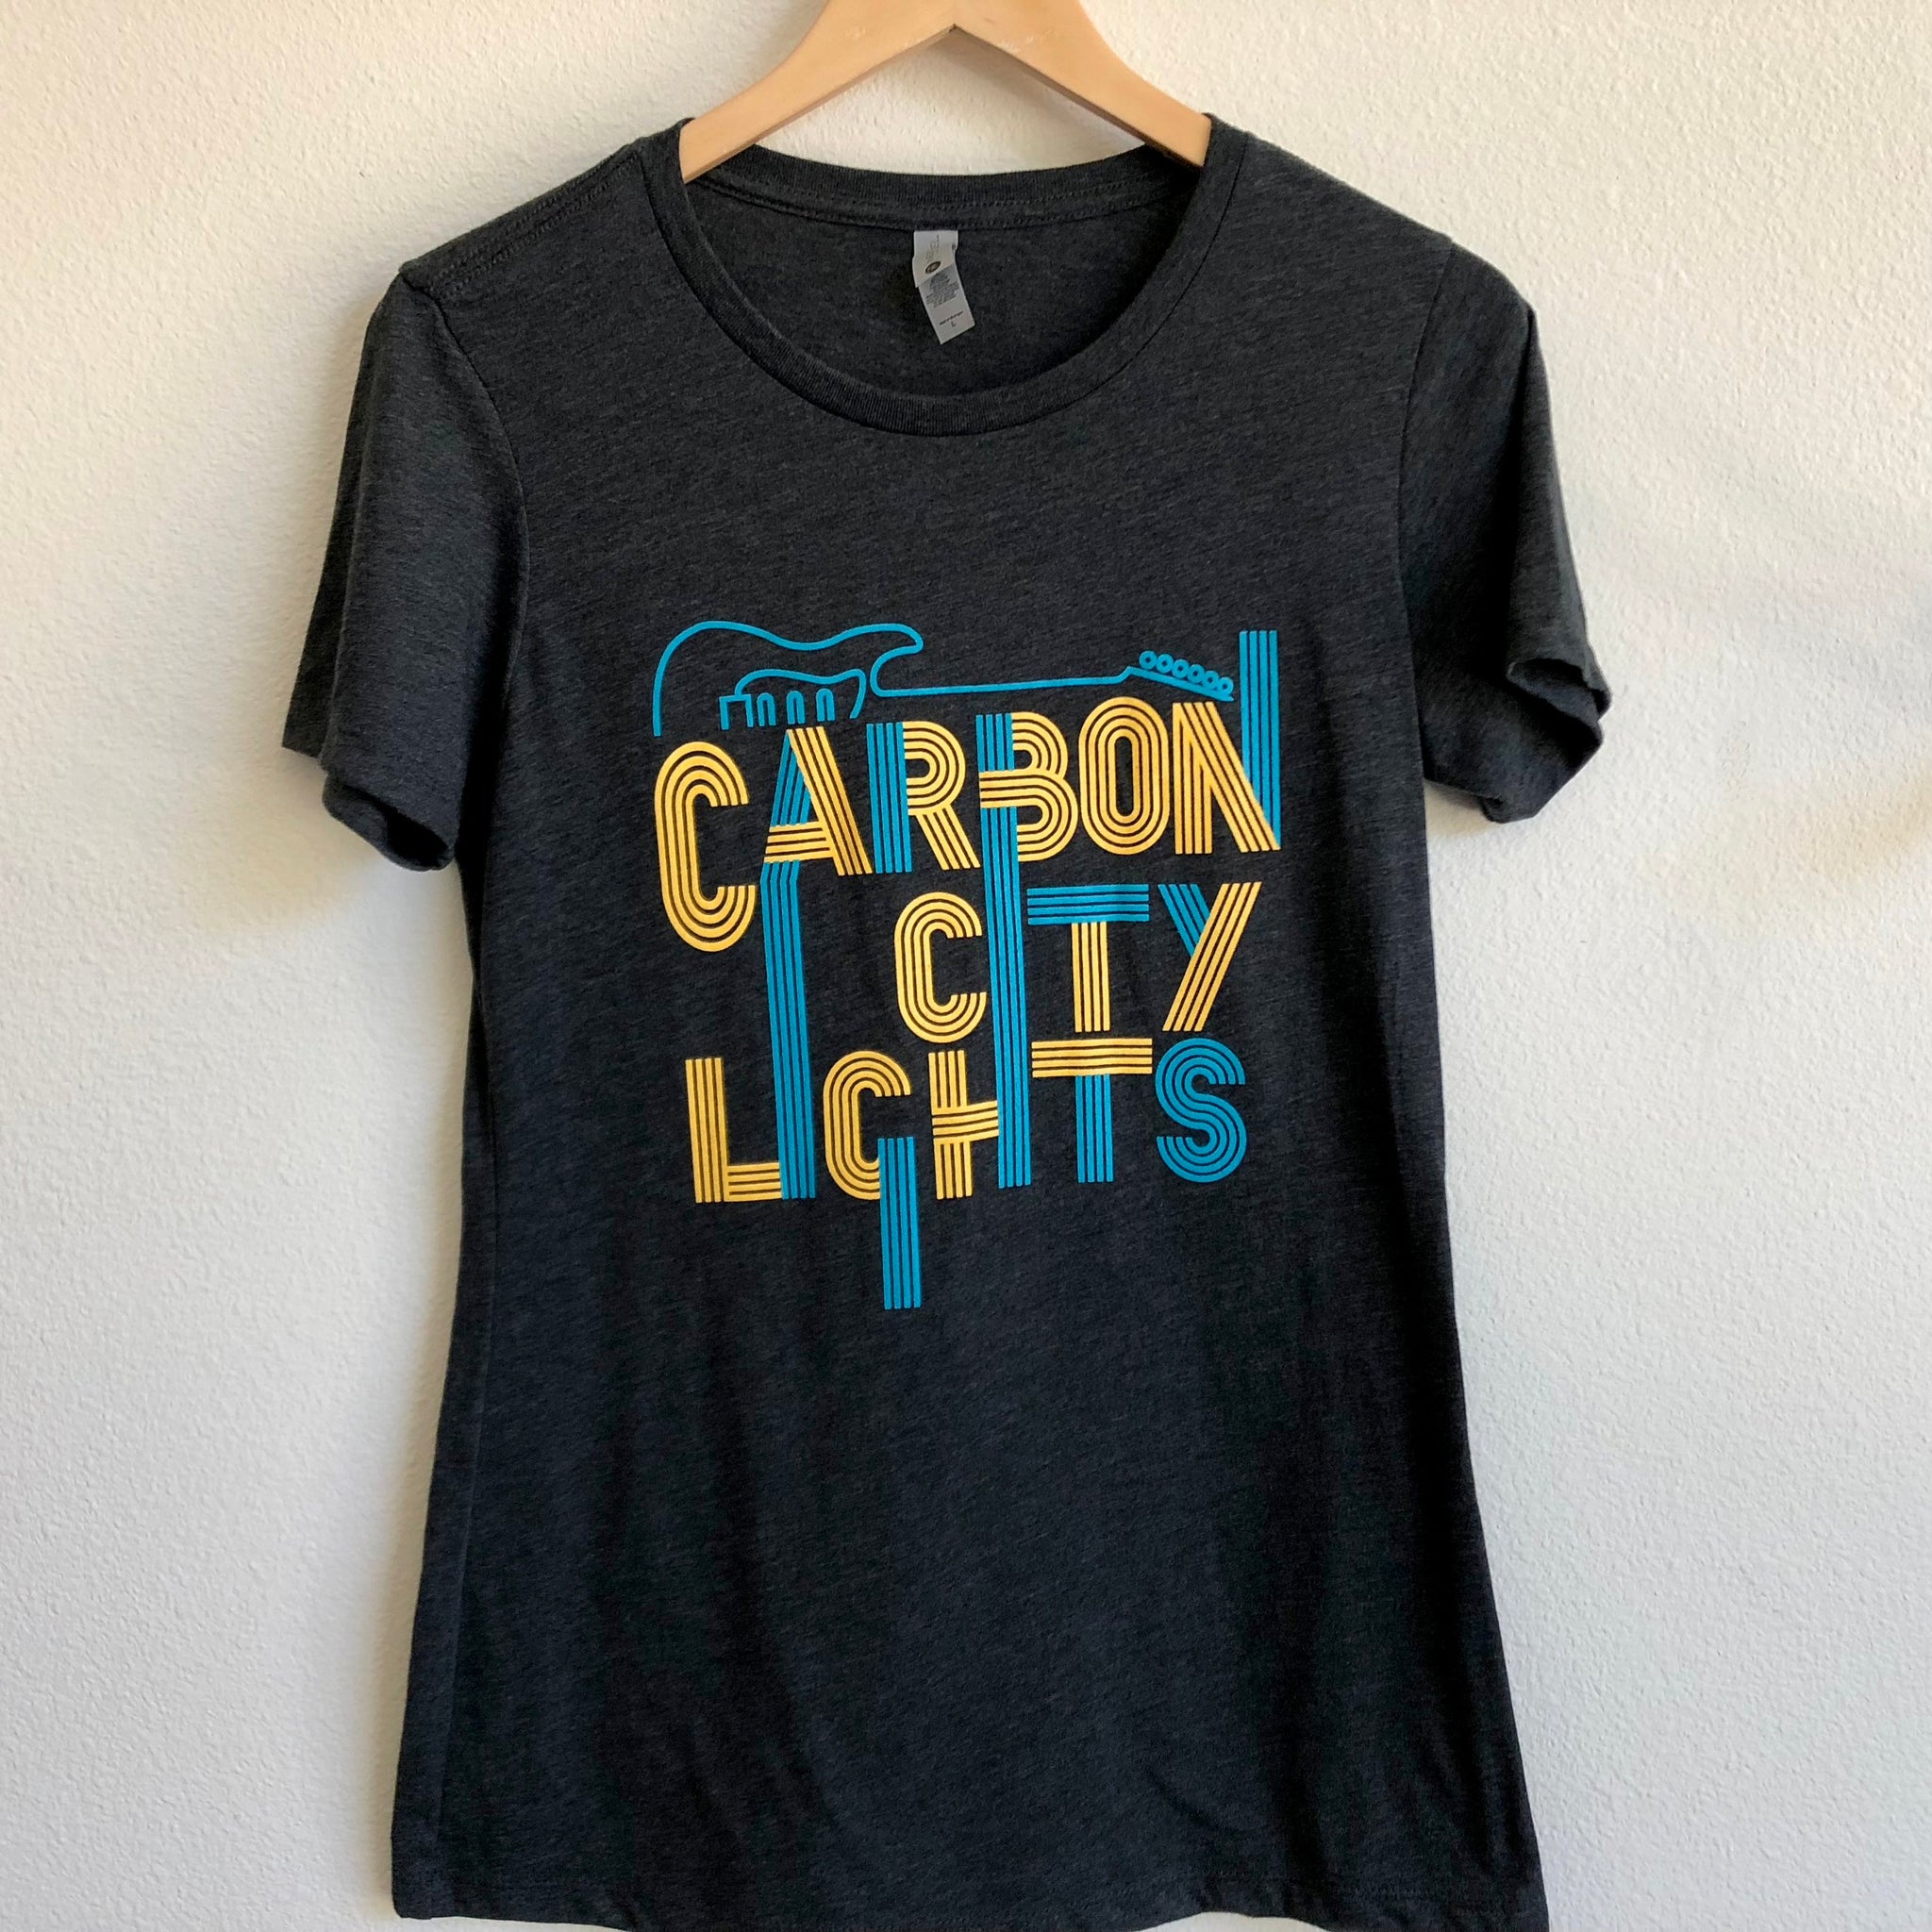 Women's Gray T-Shirt - Carbon City Lights